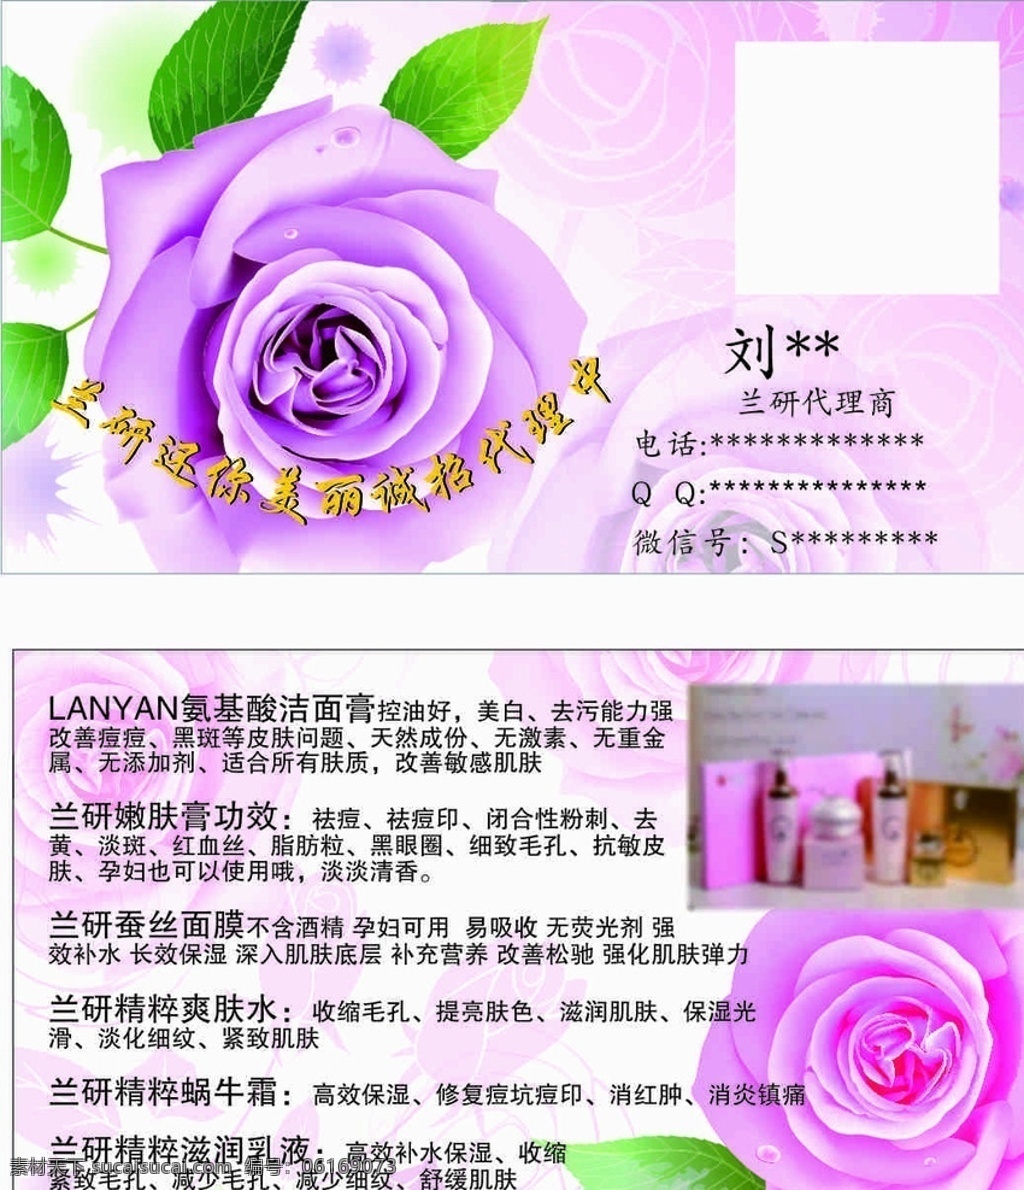 美容名片 兰研 护肤 名片 名片设计 花瓣 紫色 粉色 名片广告 广告